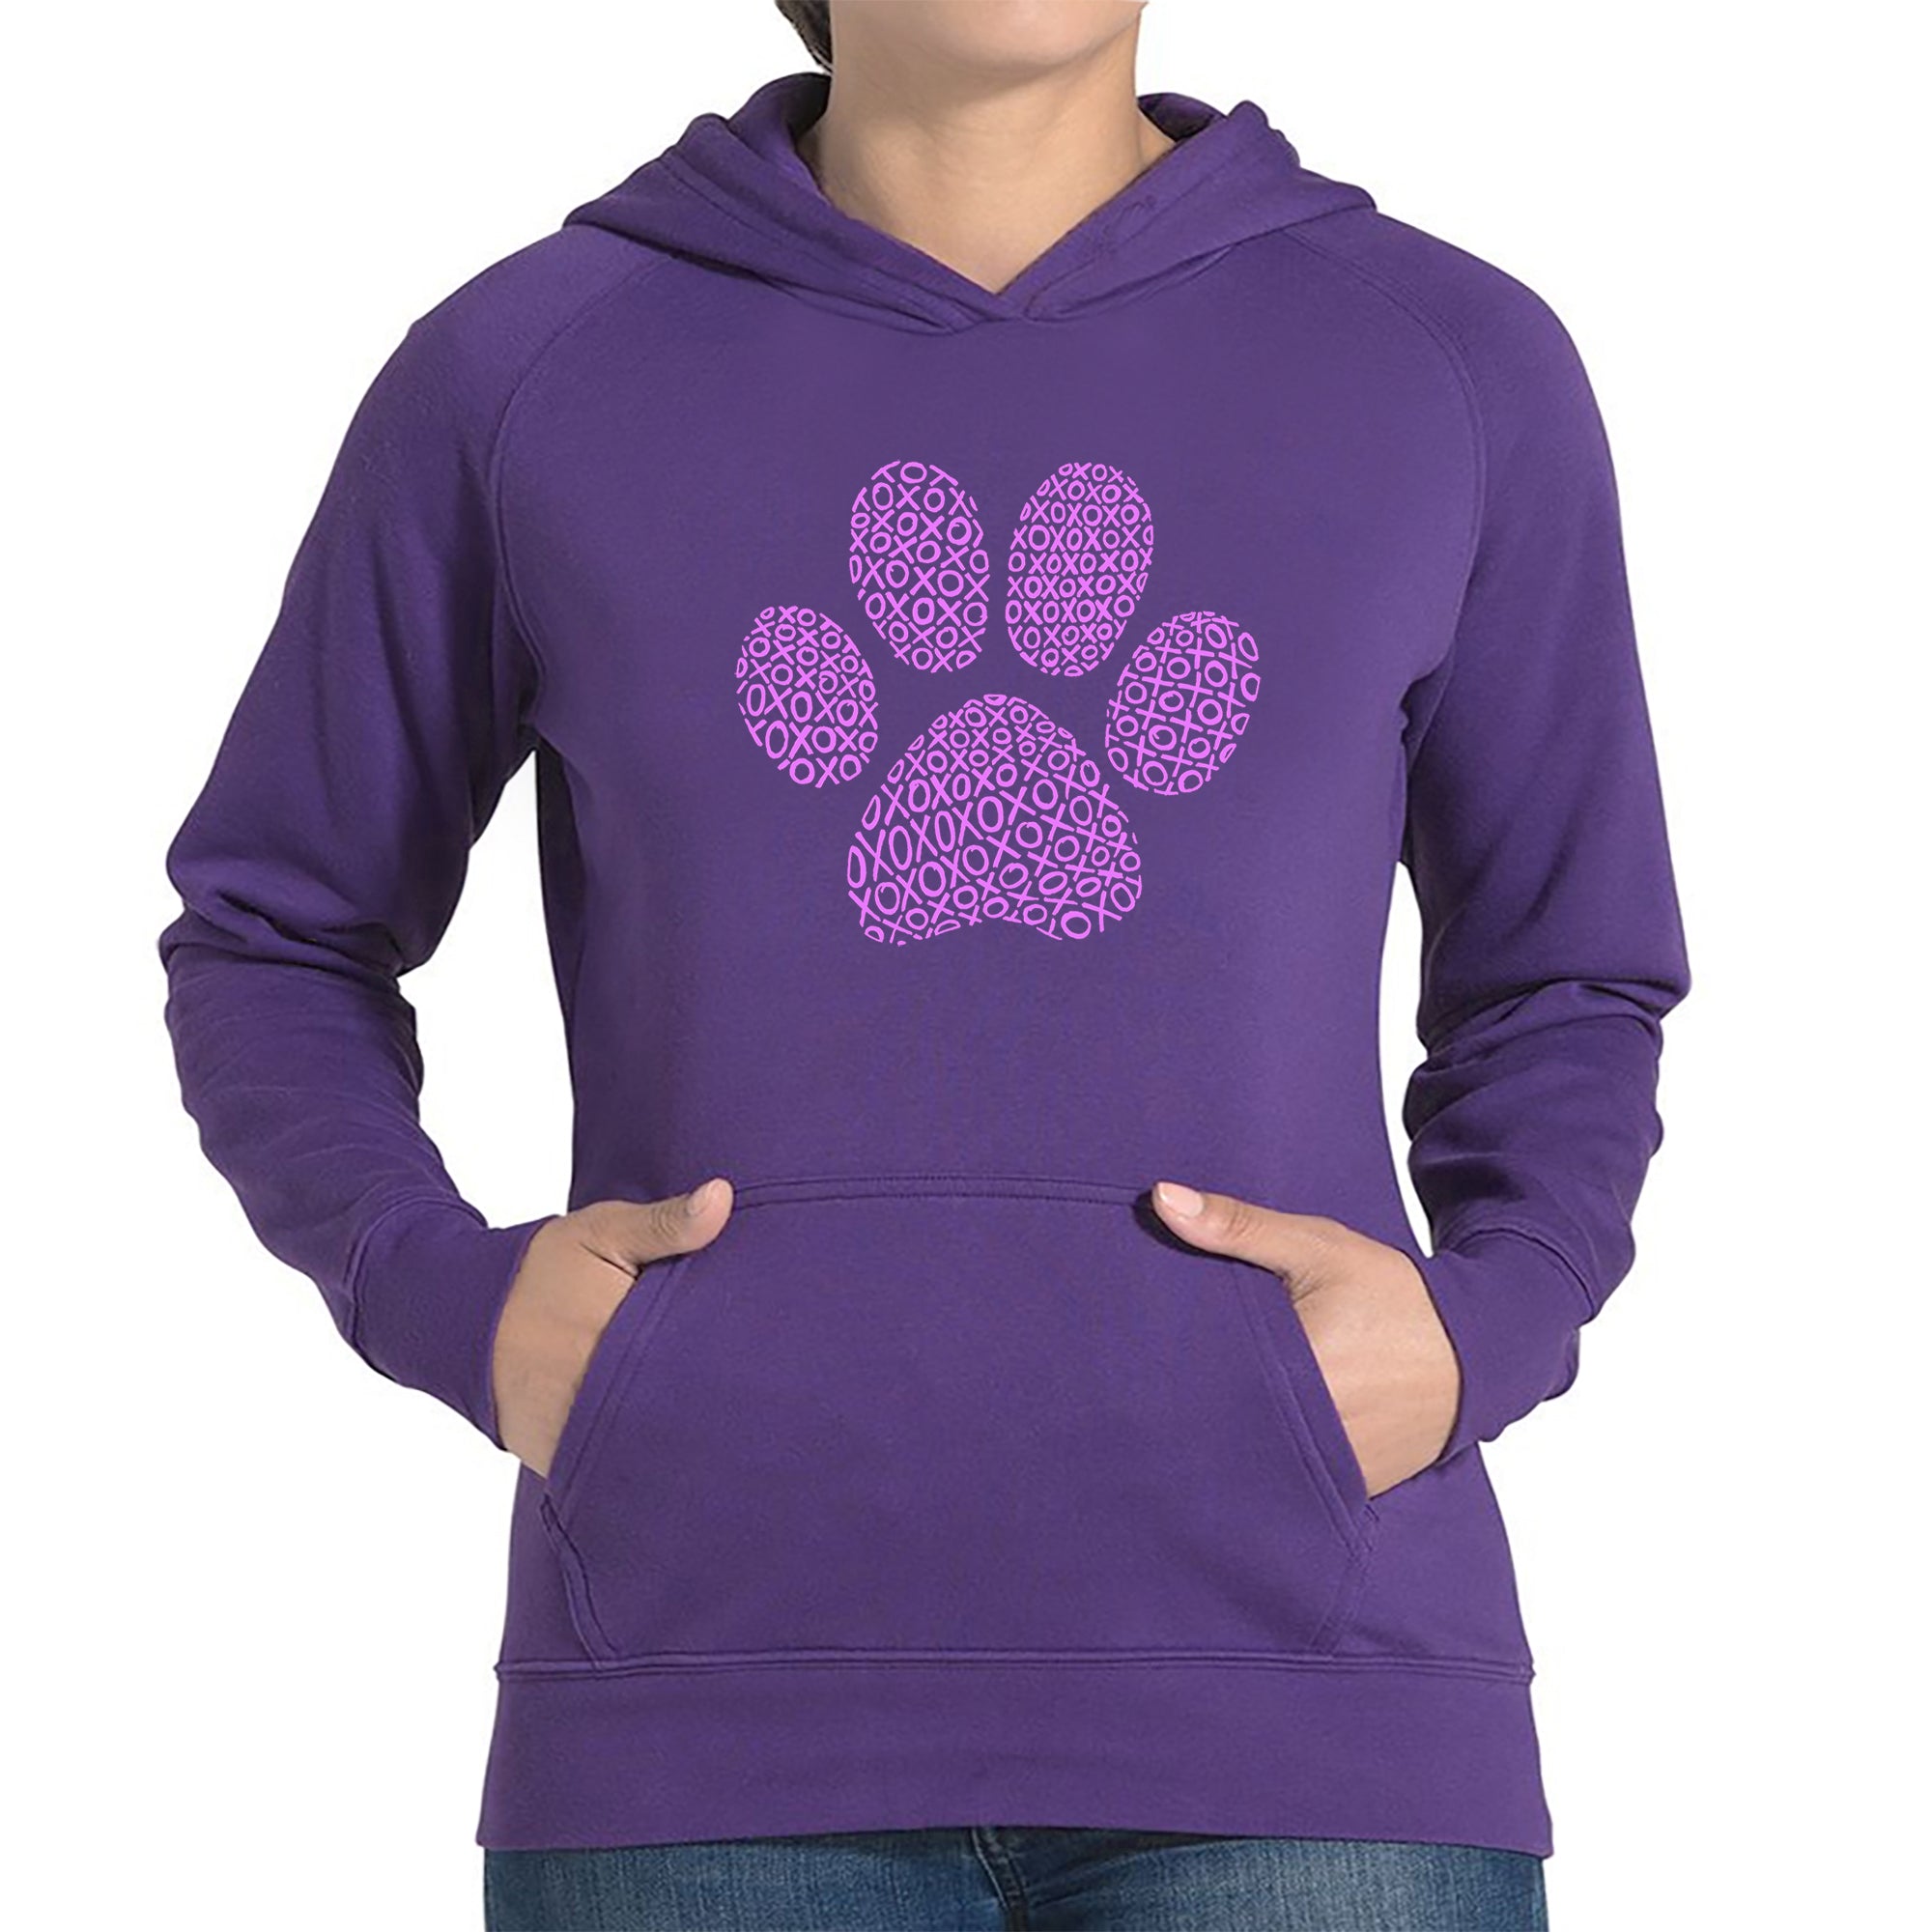 XOXO Dog Paw - Women's Word Art Hooded Sweatshirt - Purple - XXX-Large